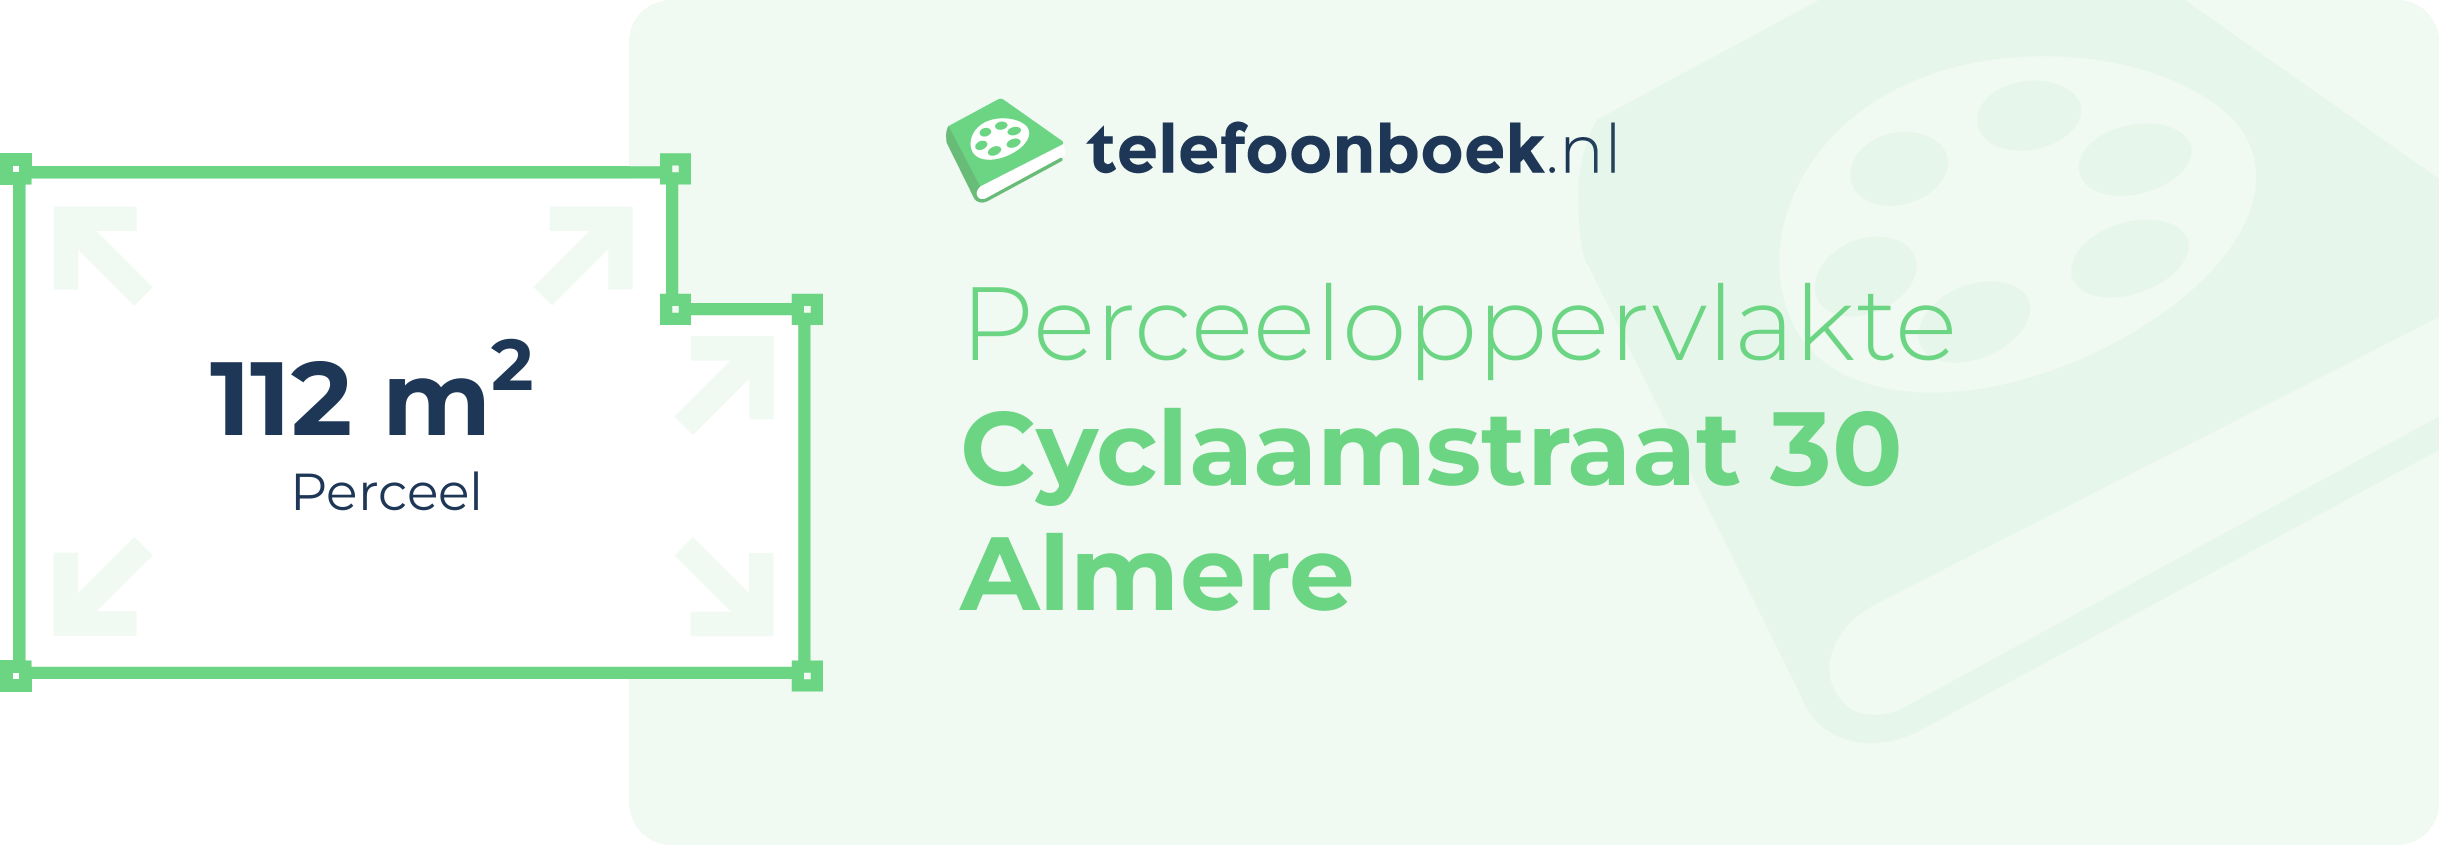 Perceeloppervlakte Cyclaamstraat 30 Almere